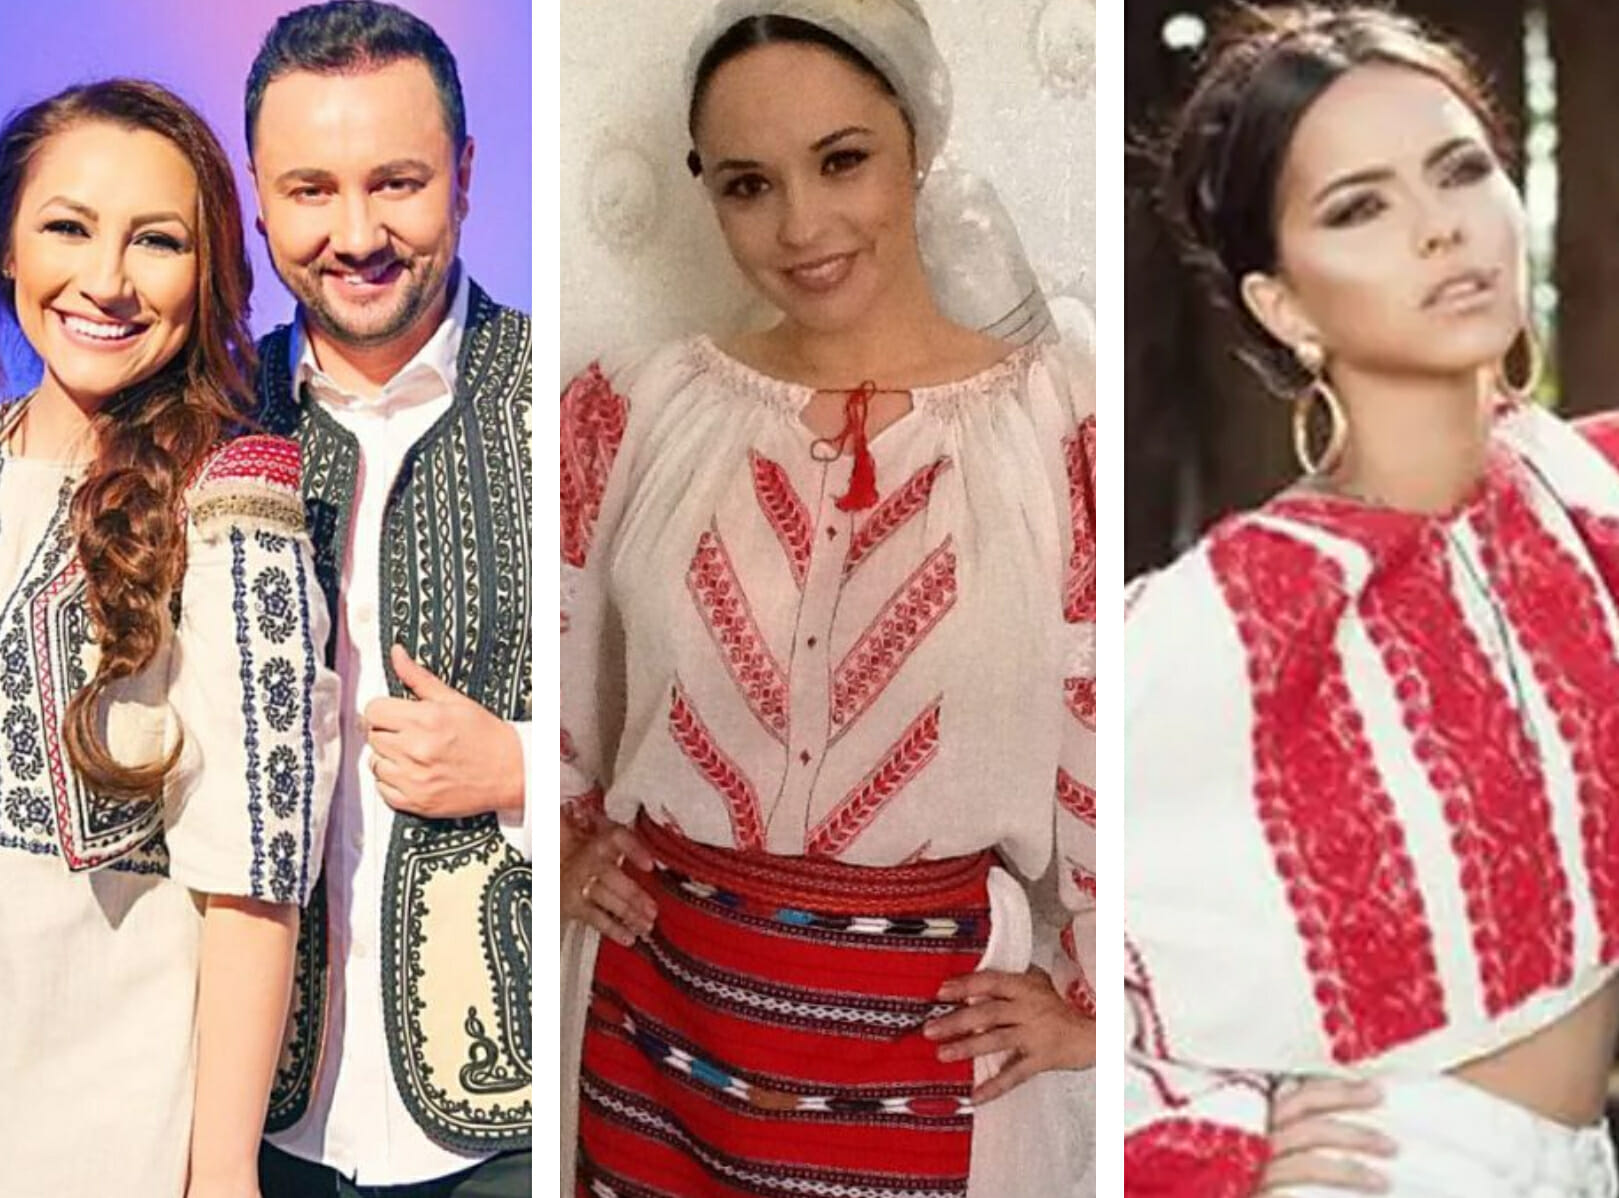 De Ziua Națională, vedetele se întrec în costume populare. Cum arată țărăncuțele Mihaela Rădulescu, Andra și Inna